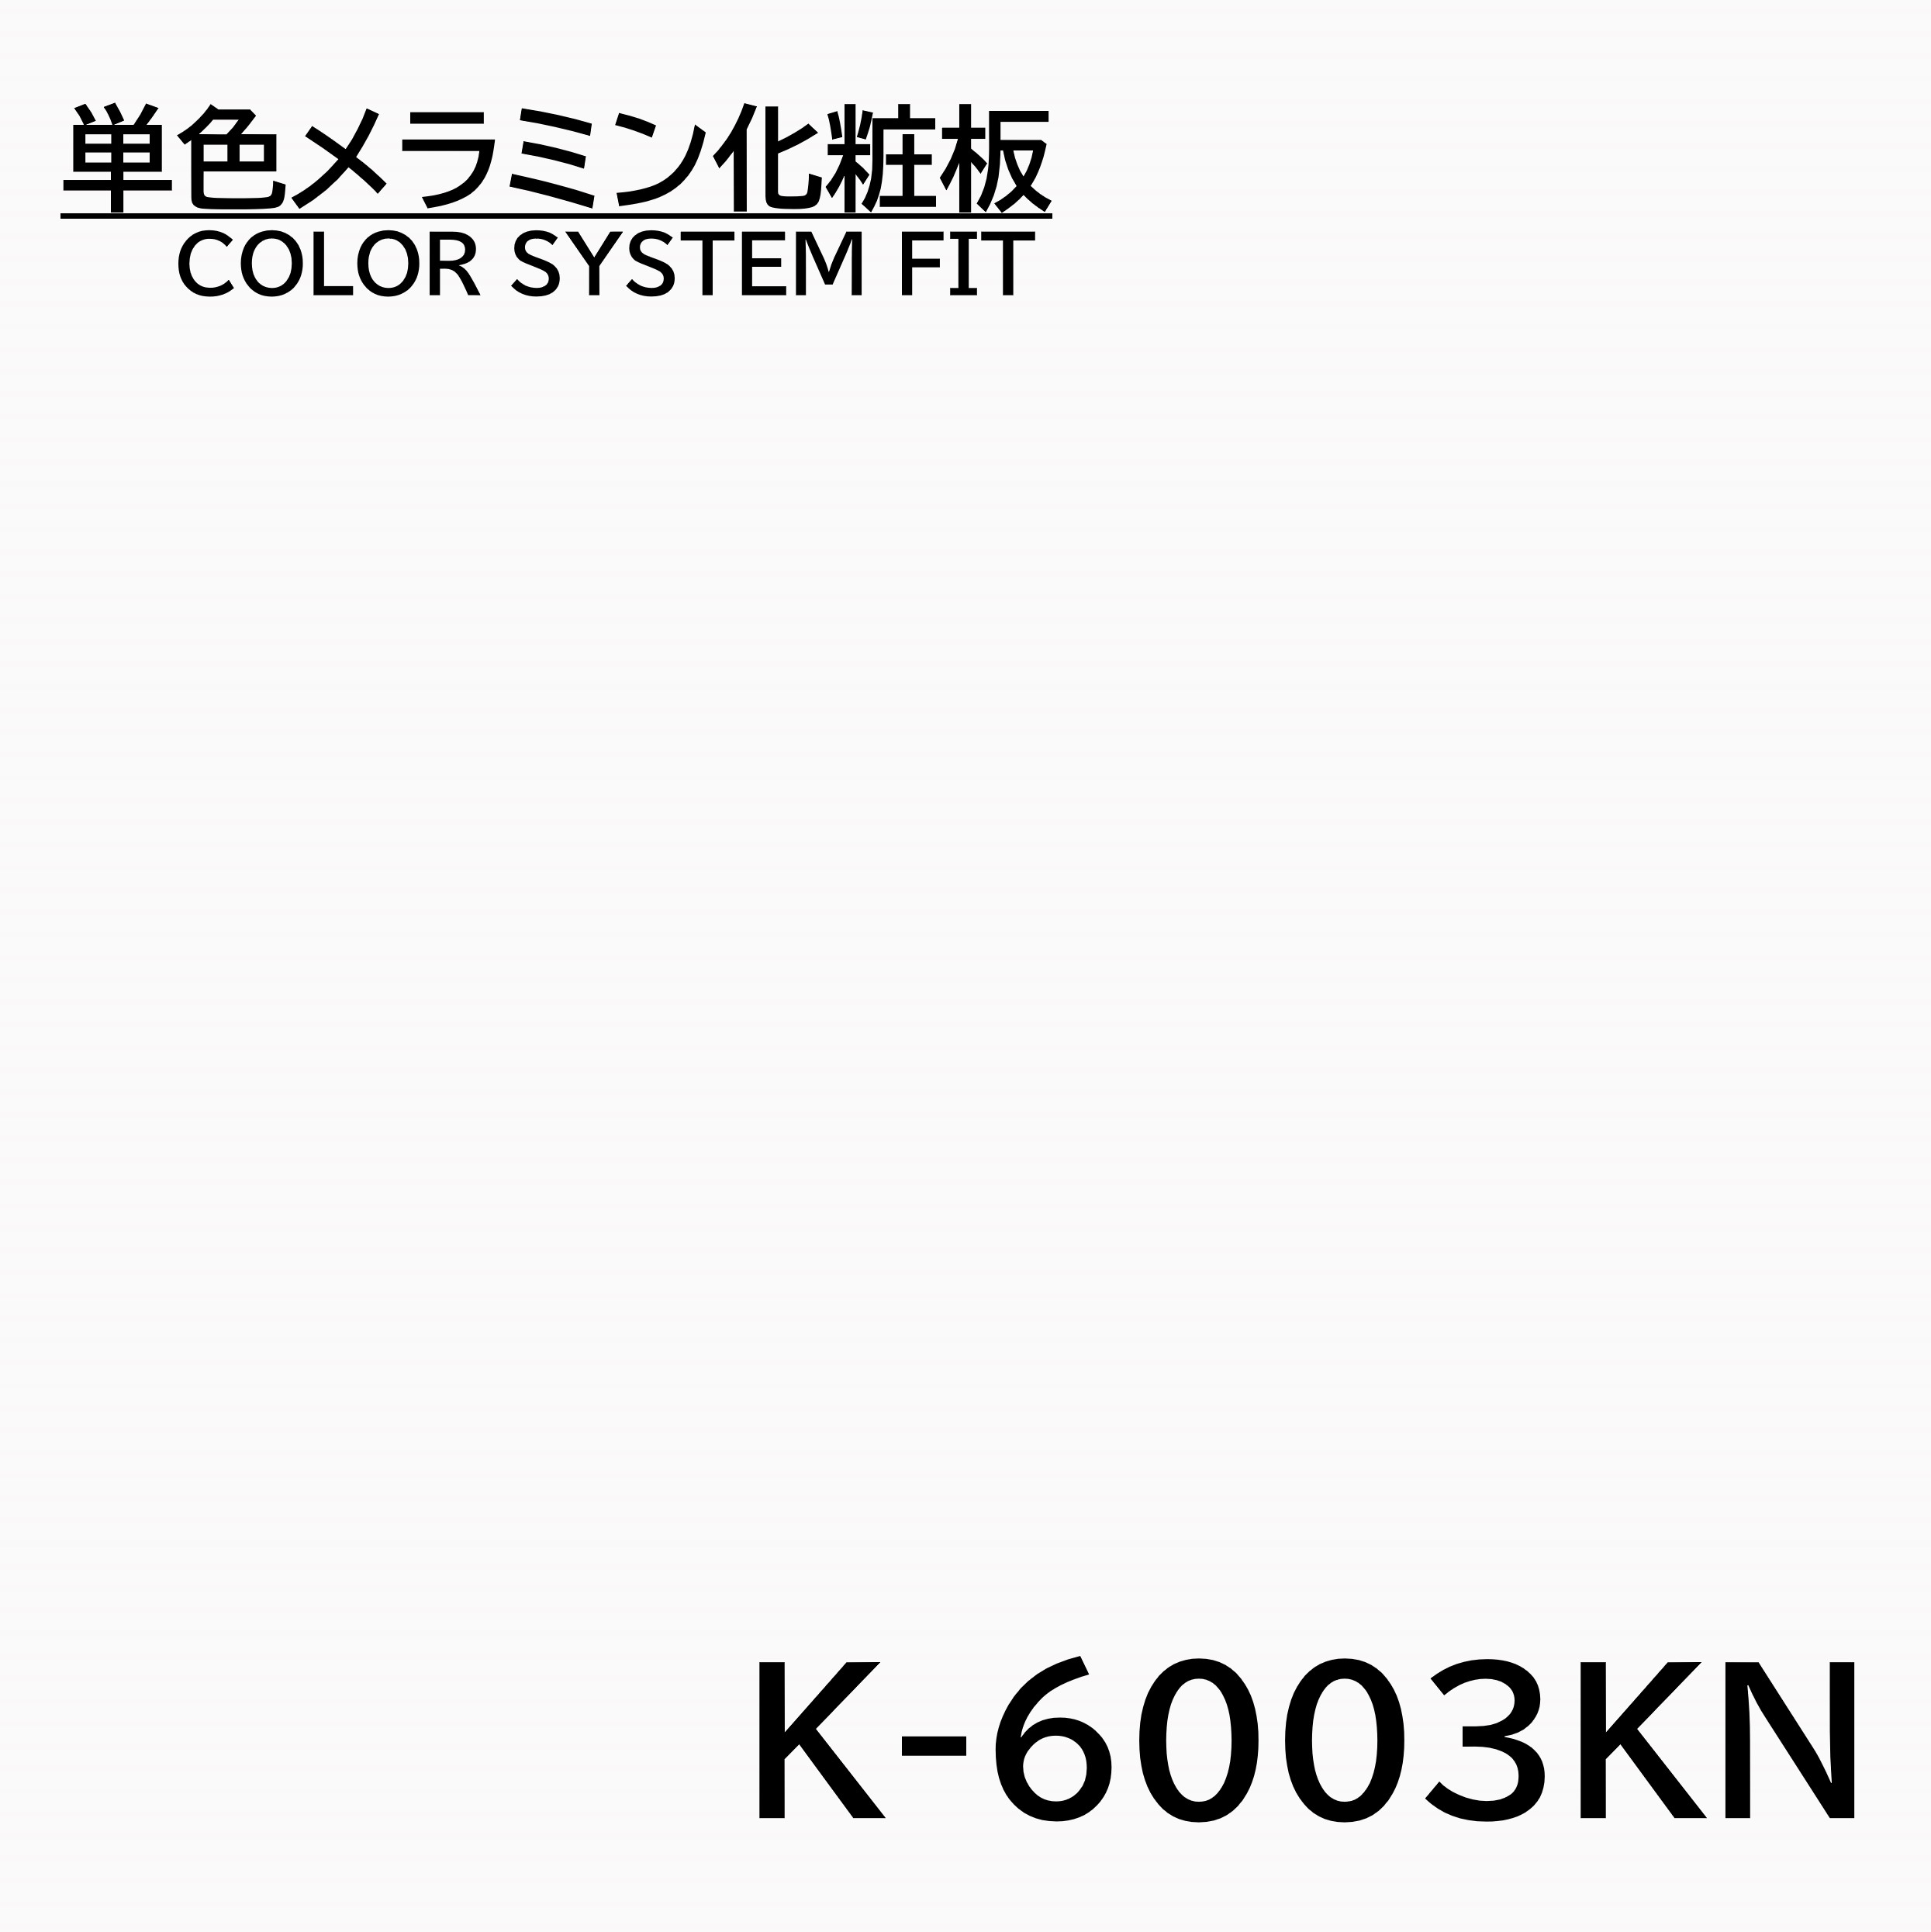 メラミン化粧板 カラーシステムフィット K-6003KN ベースカラー 4×8 0.95mm 1230×2450mm オフホワイト 単色 化粧合板